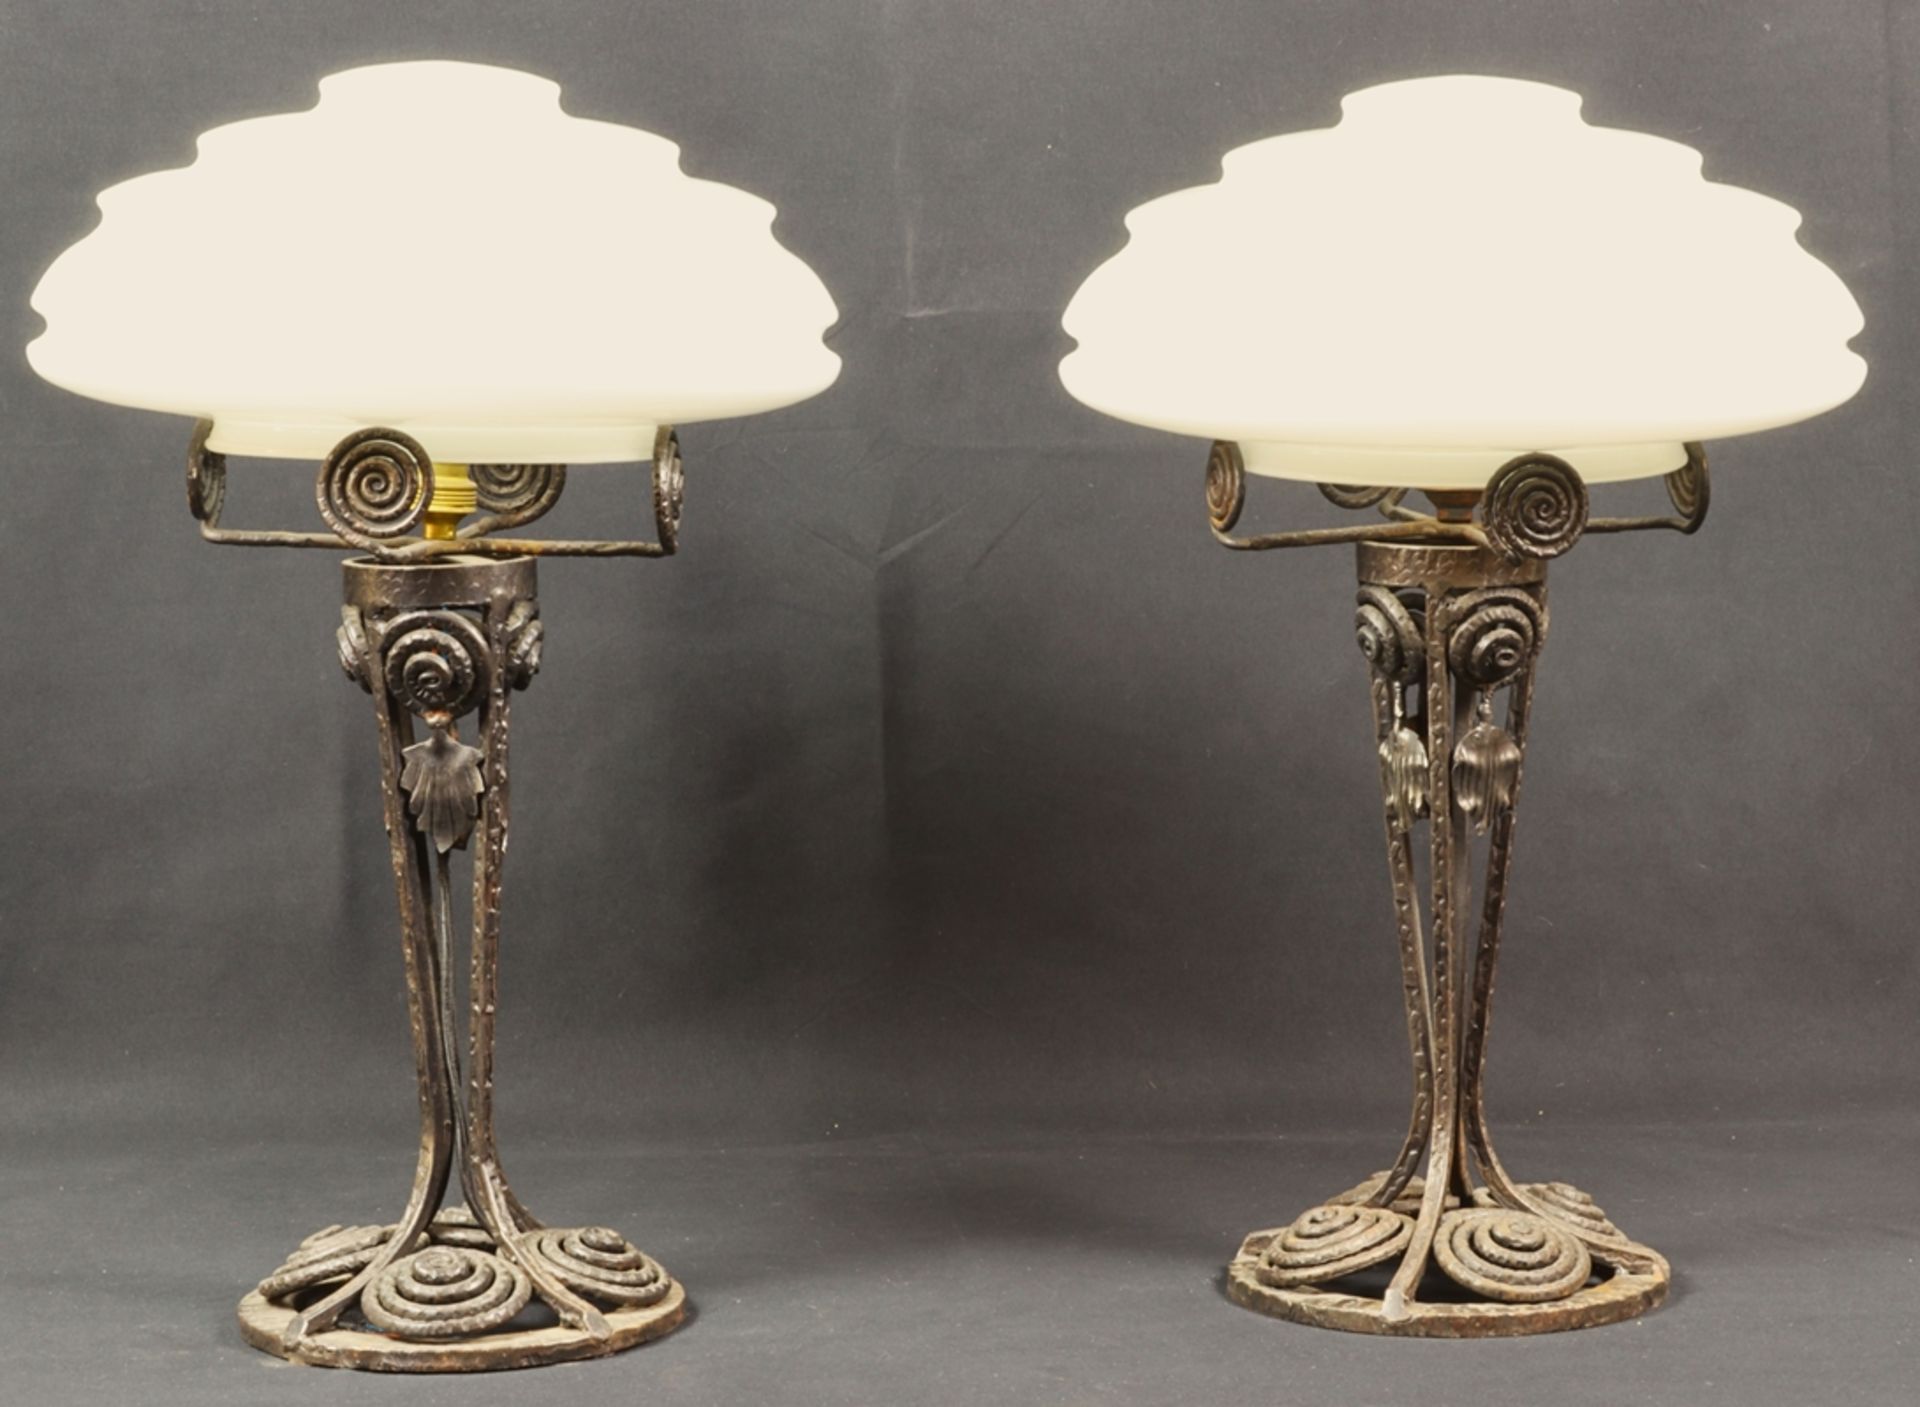 Paar Französische Tischlampen, Paris um 1925 - 1927